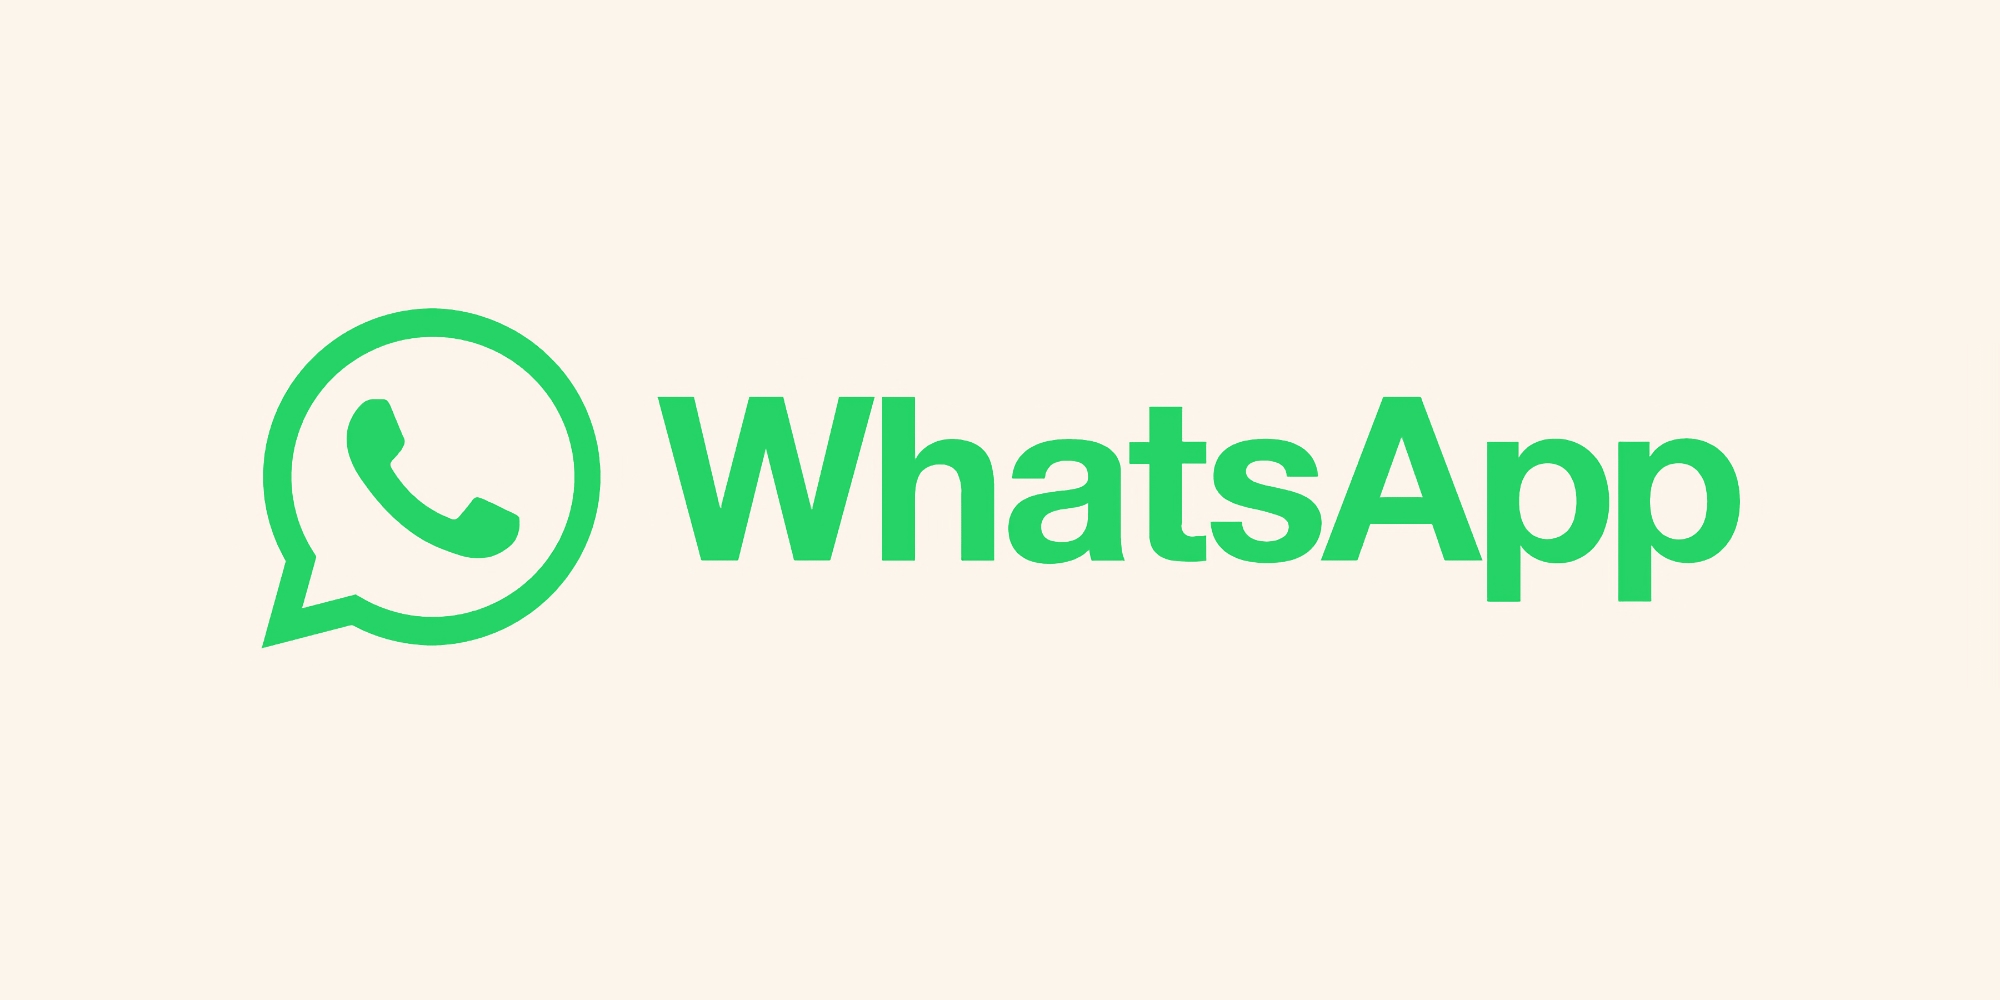 Meta ogłosiła nowe funkcje dla kanałów WhatsApp